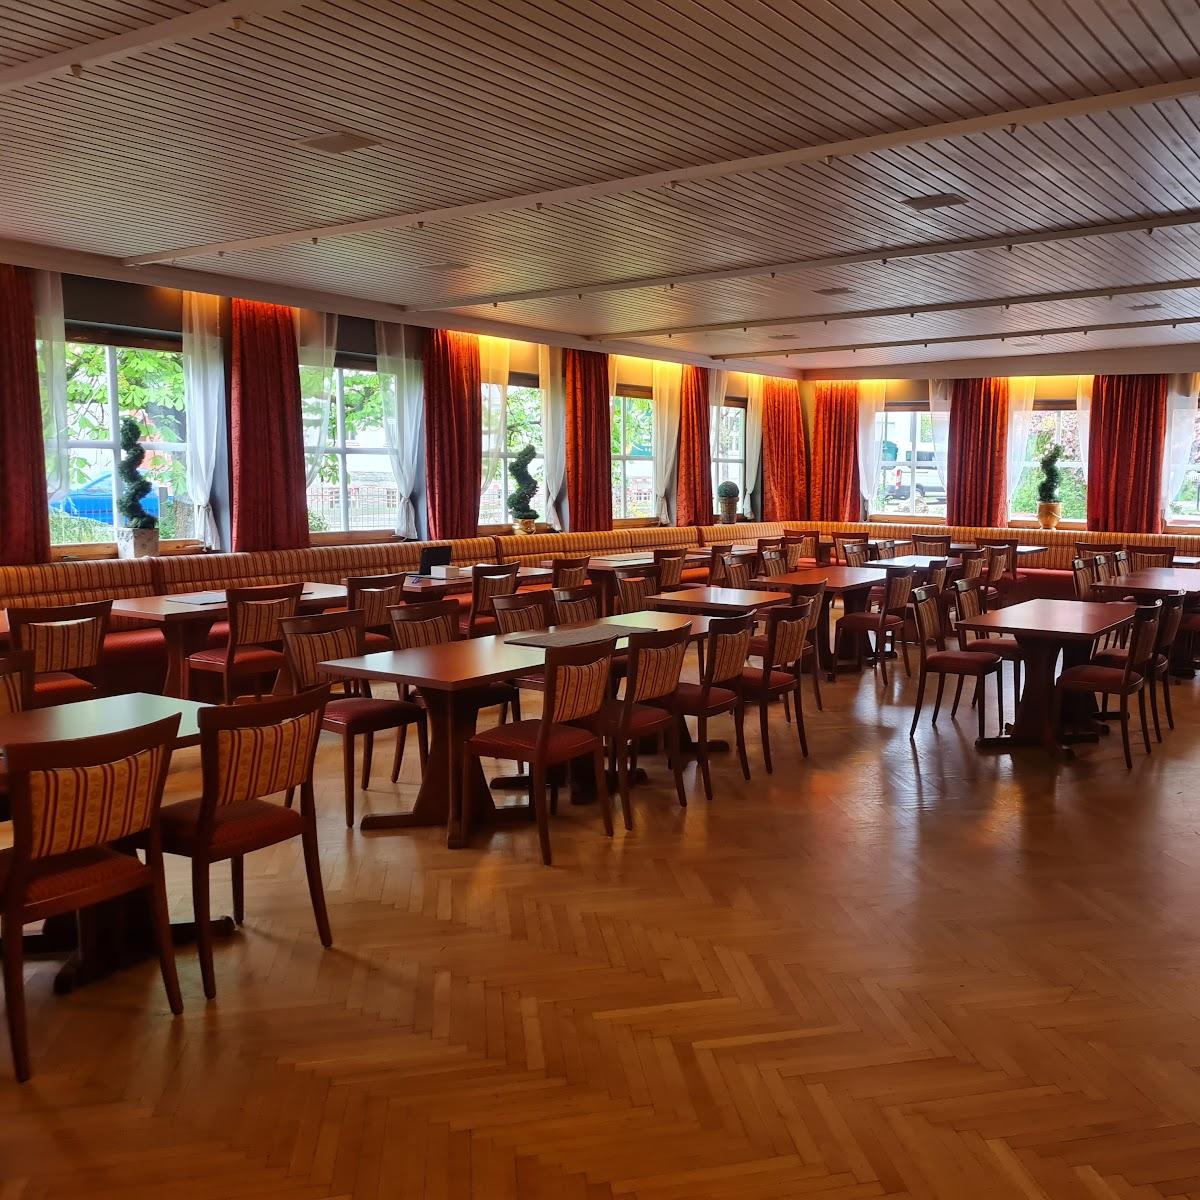 Restaurant "Wirtshaus zur ohe" in Ringelai